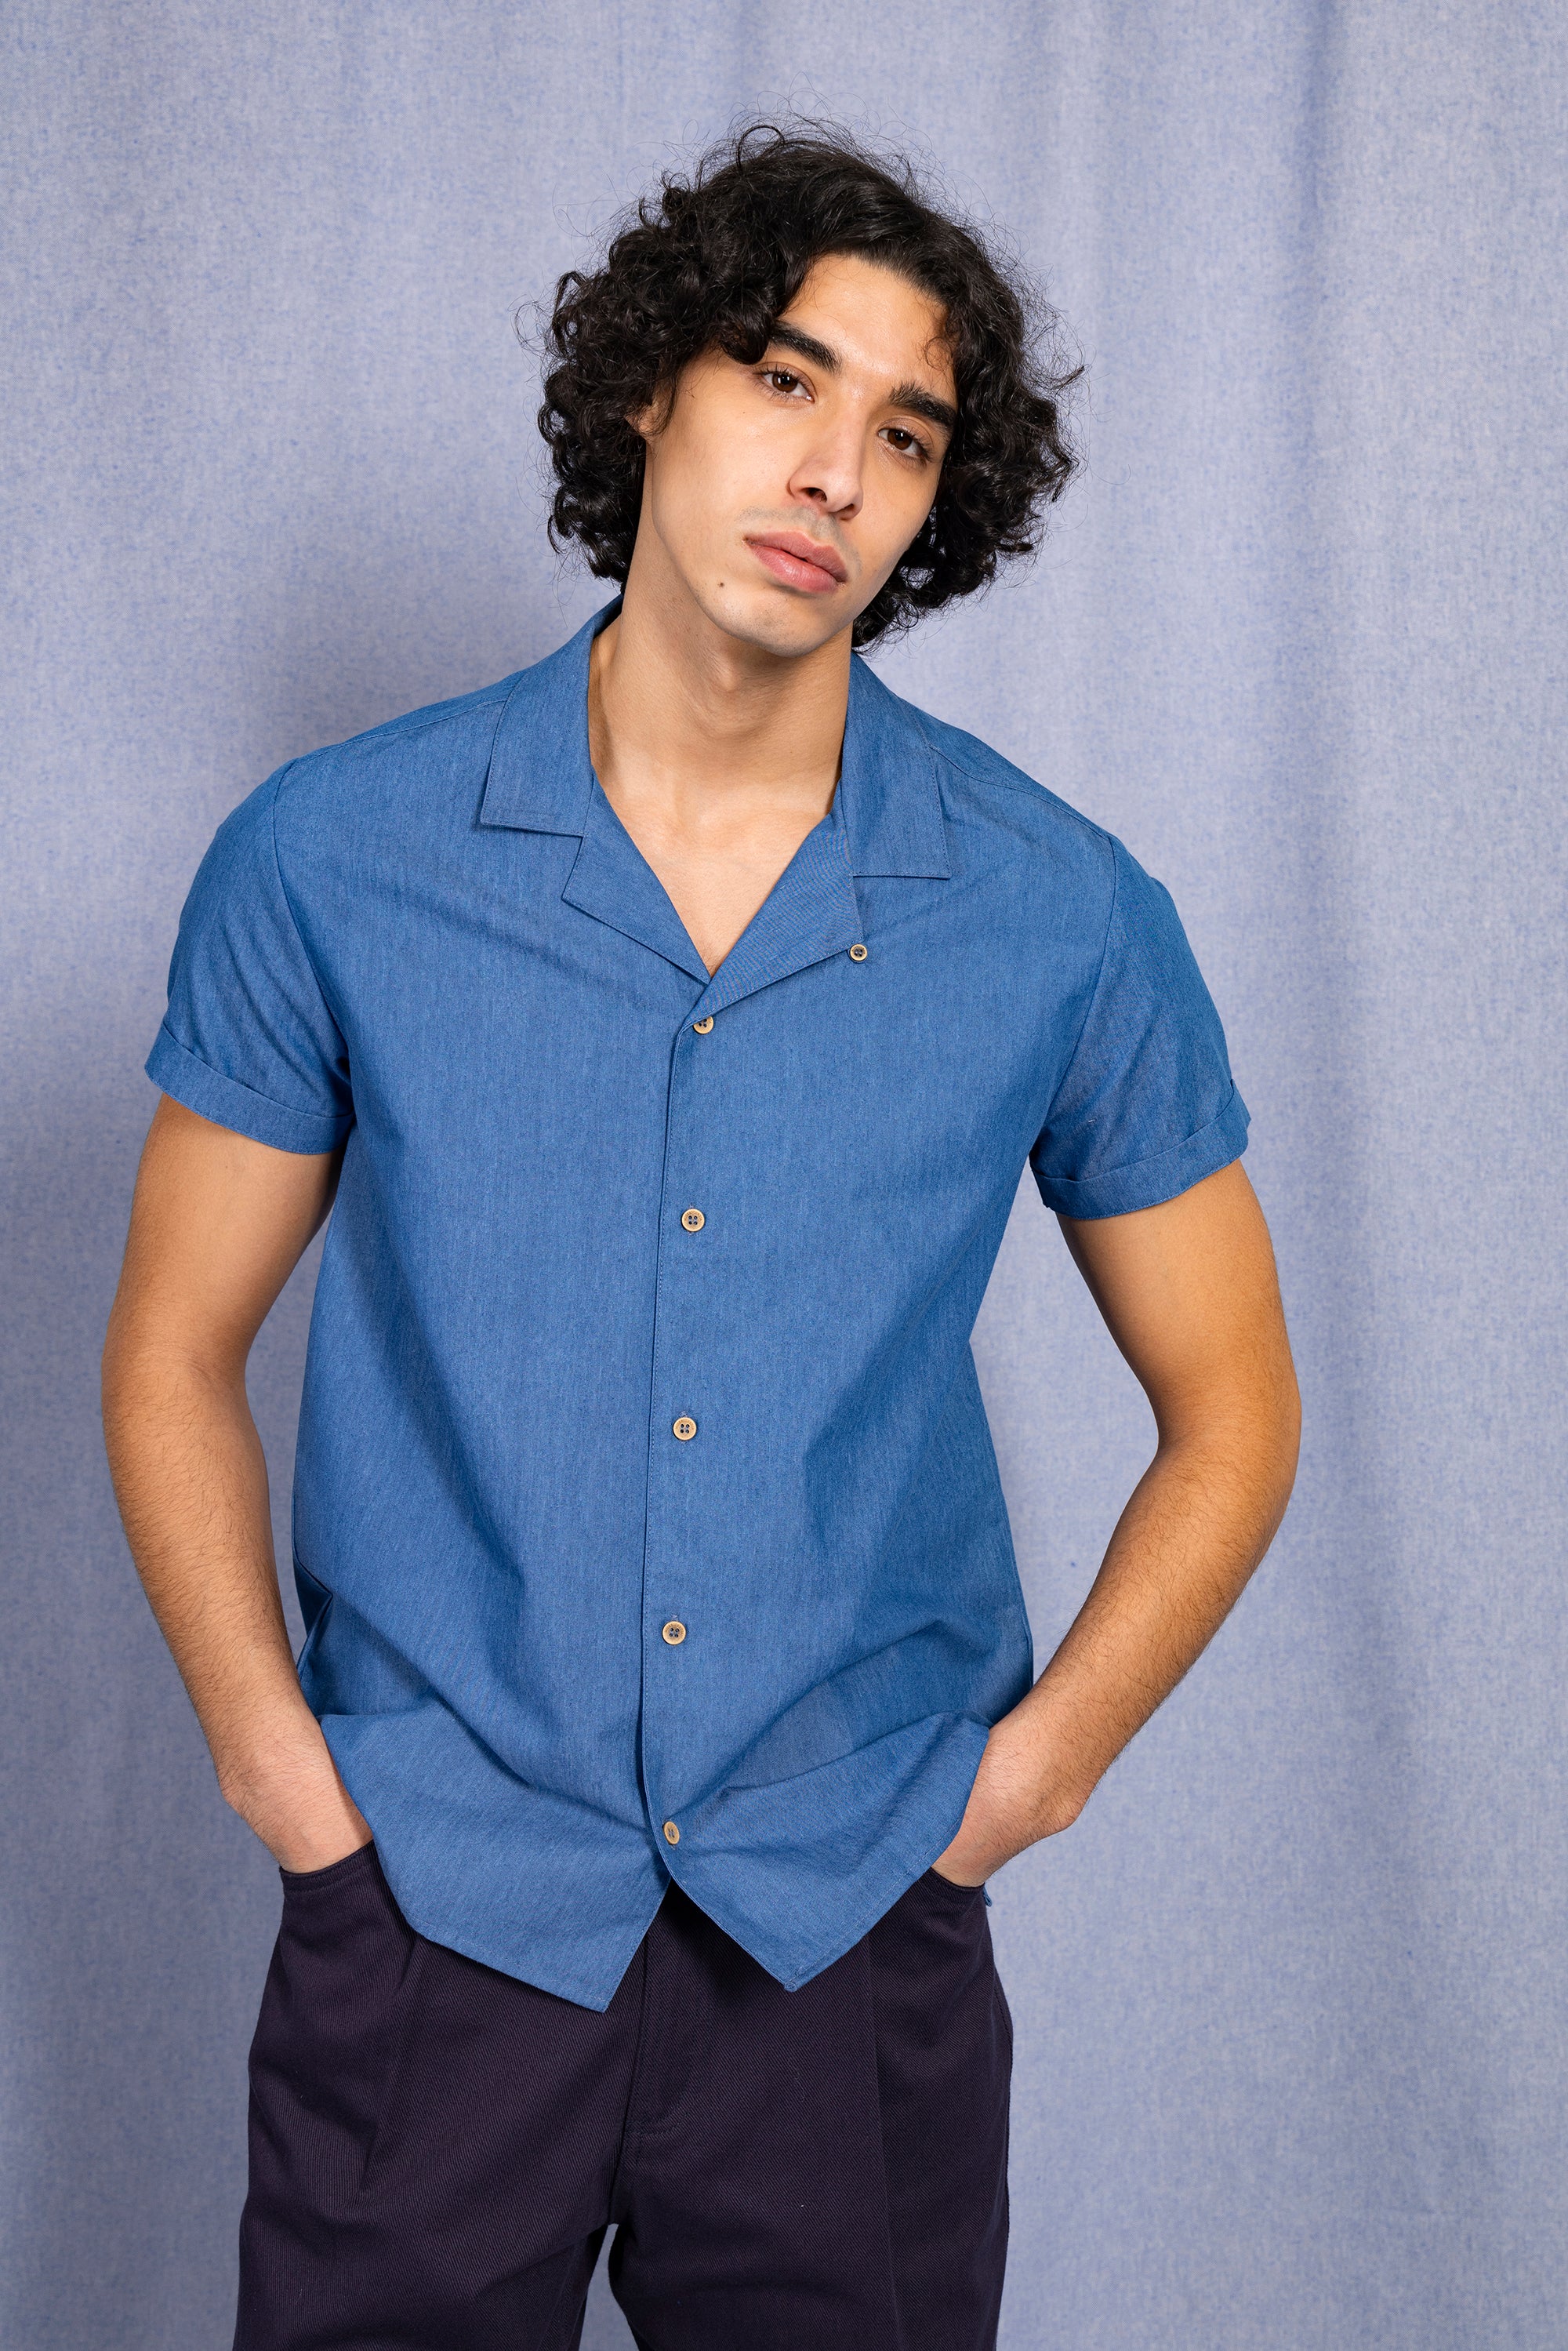 Light blue short-sleeved shirt for men in fine cotton